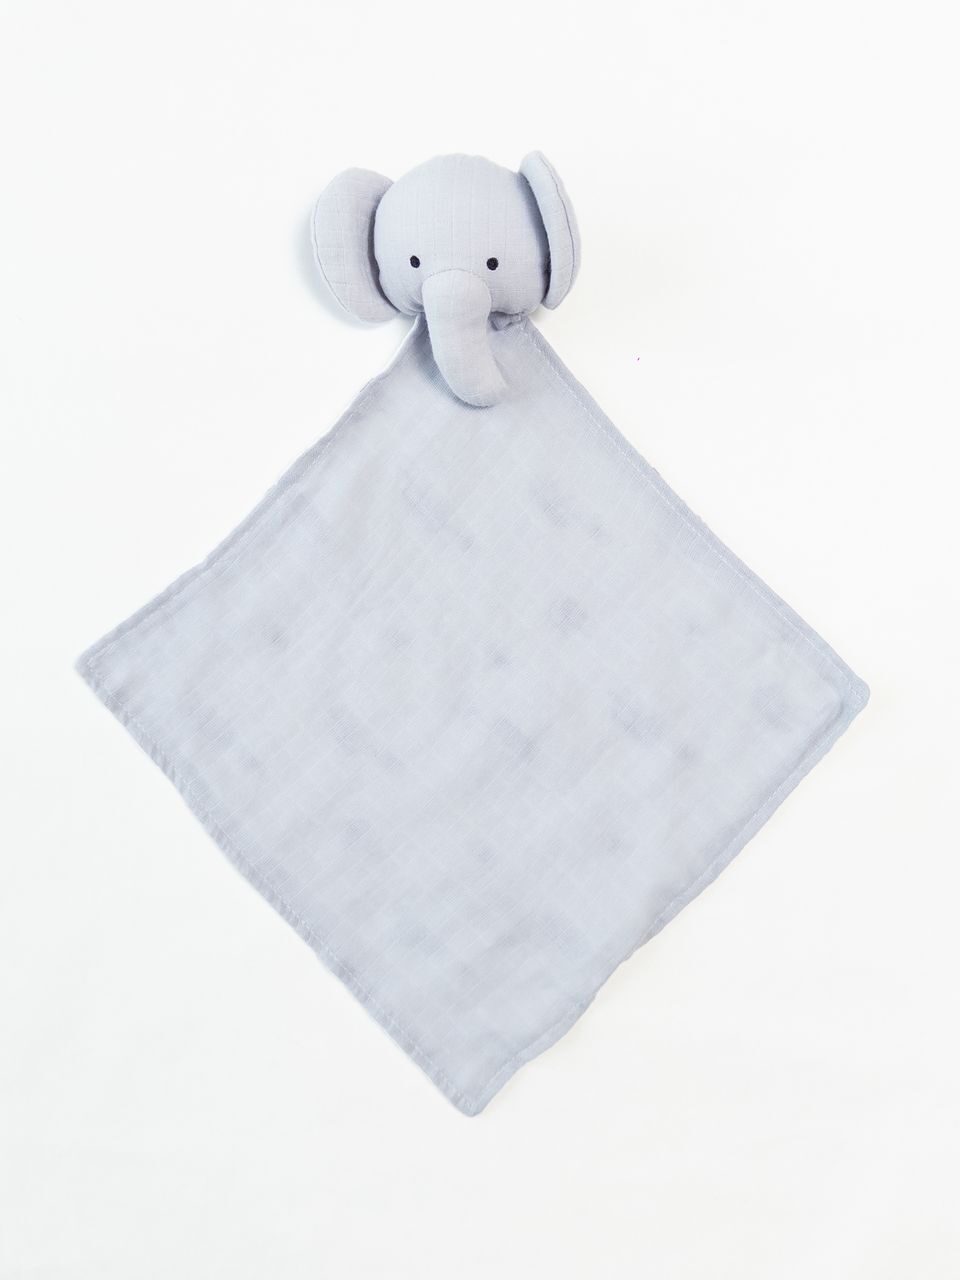 Салфетка-игрушка "Слоник" муслиновая двухслойная цвет серый/белый размер 29х29 см Primark